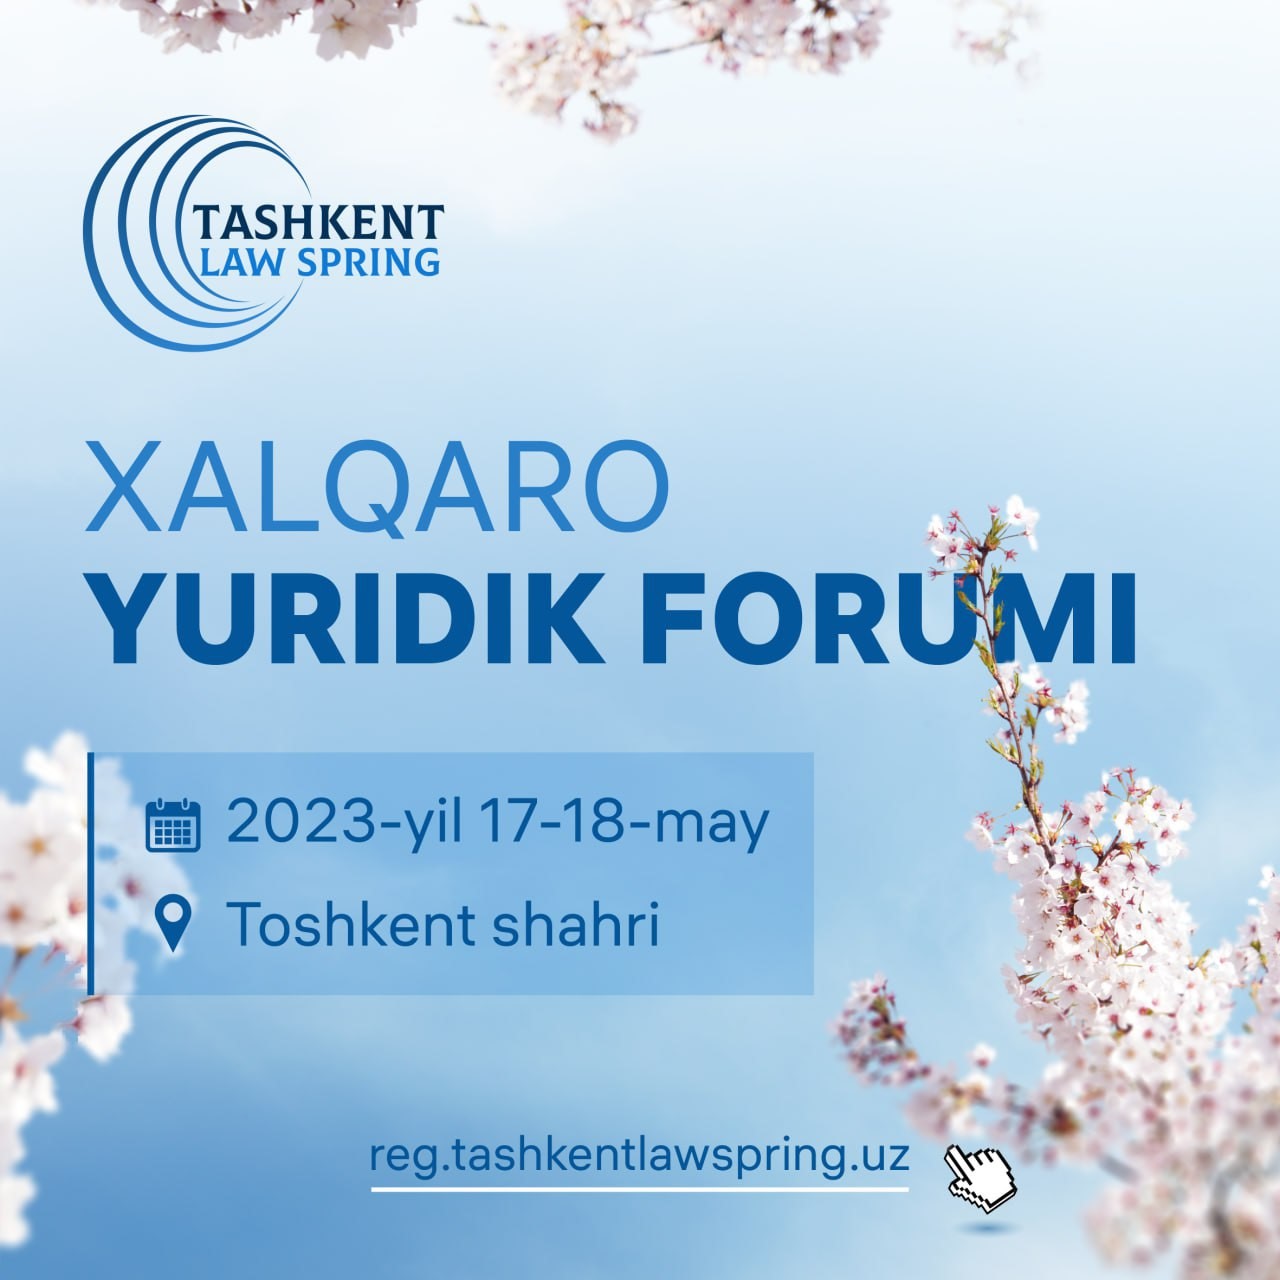 “Tashkent Law Spring” III Xalqaro yuridik forumi Toshkent shahrida 17-18 may kunlari o?tkaziladi